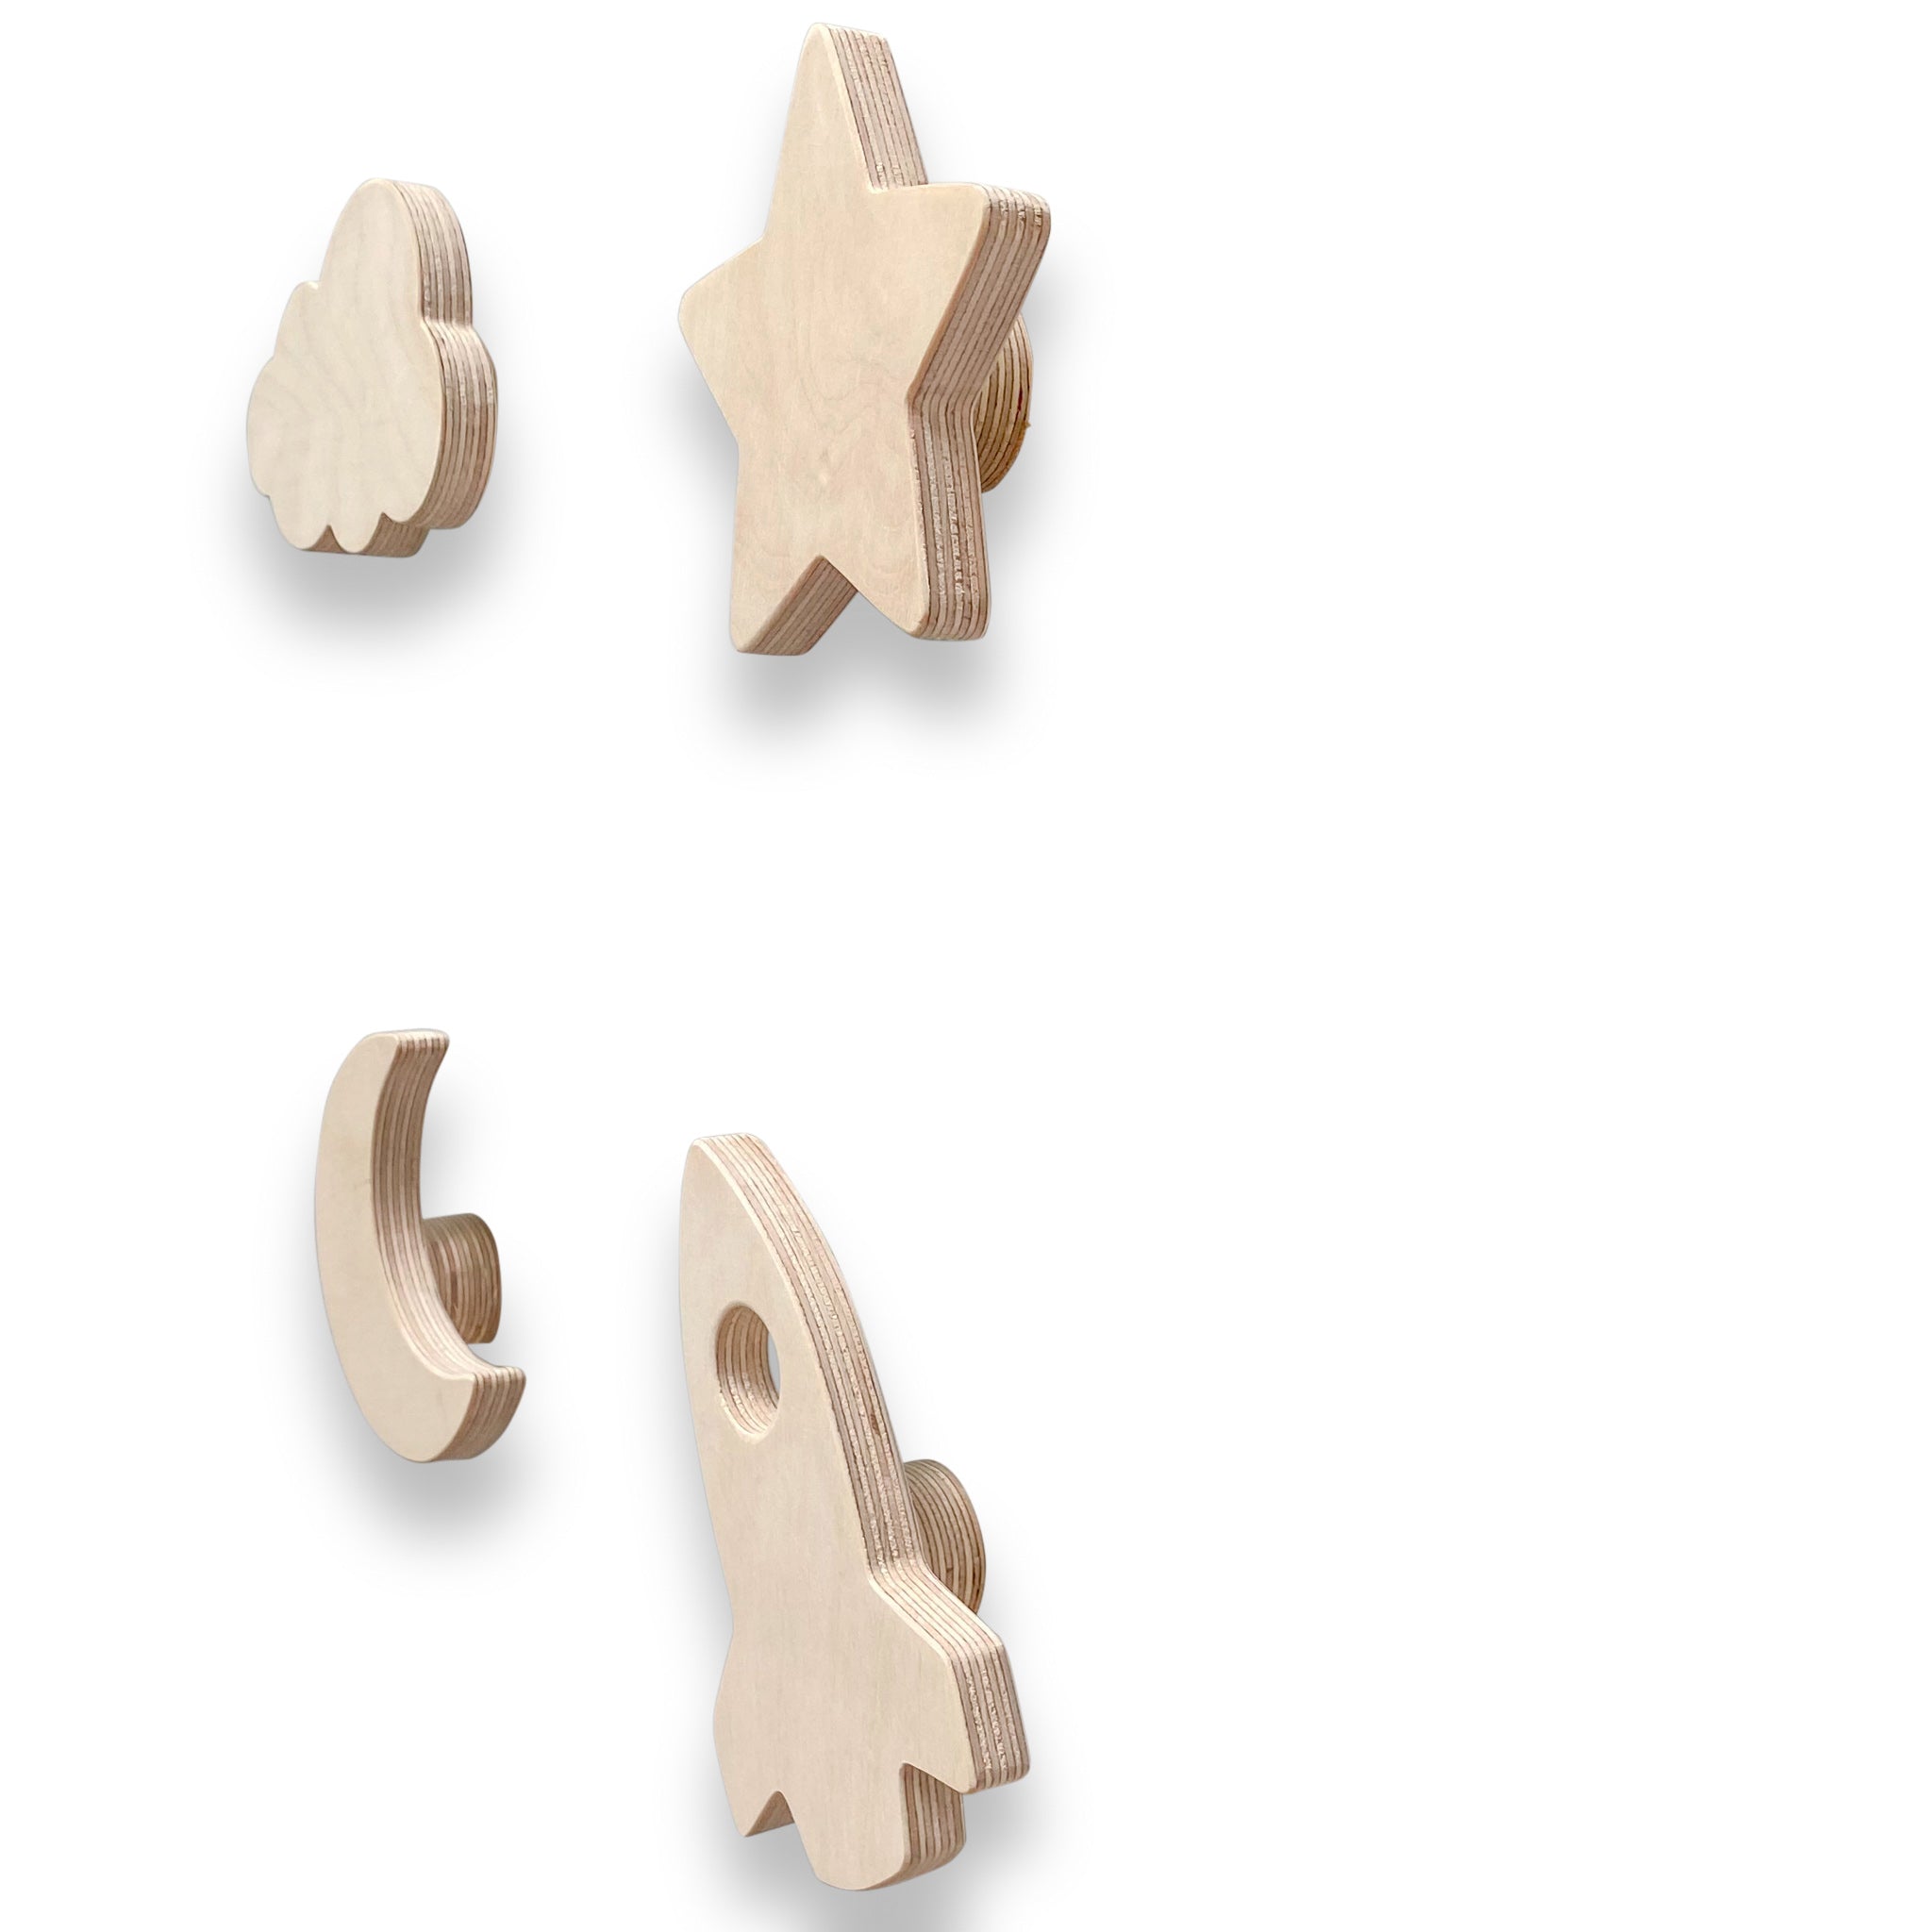 Blank houten set wandhaken kinderkamer | Ruimte - toddie.fr